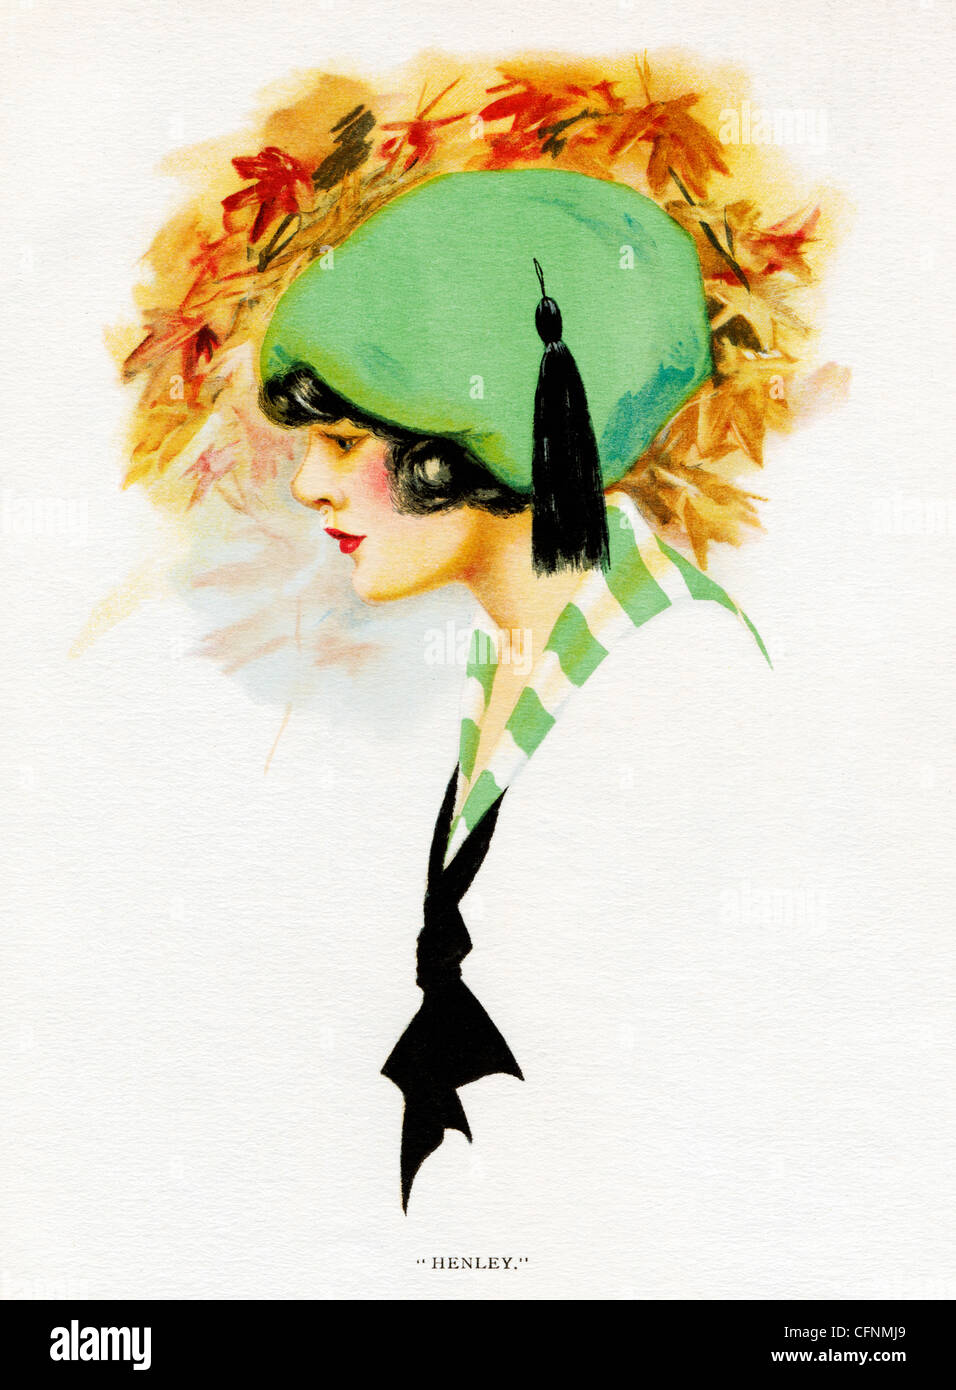 Henley, 1920 Art Deco-Abbildung von einem hübschen Mädchen in einen grünen Hut Stockfoto